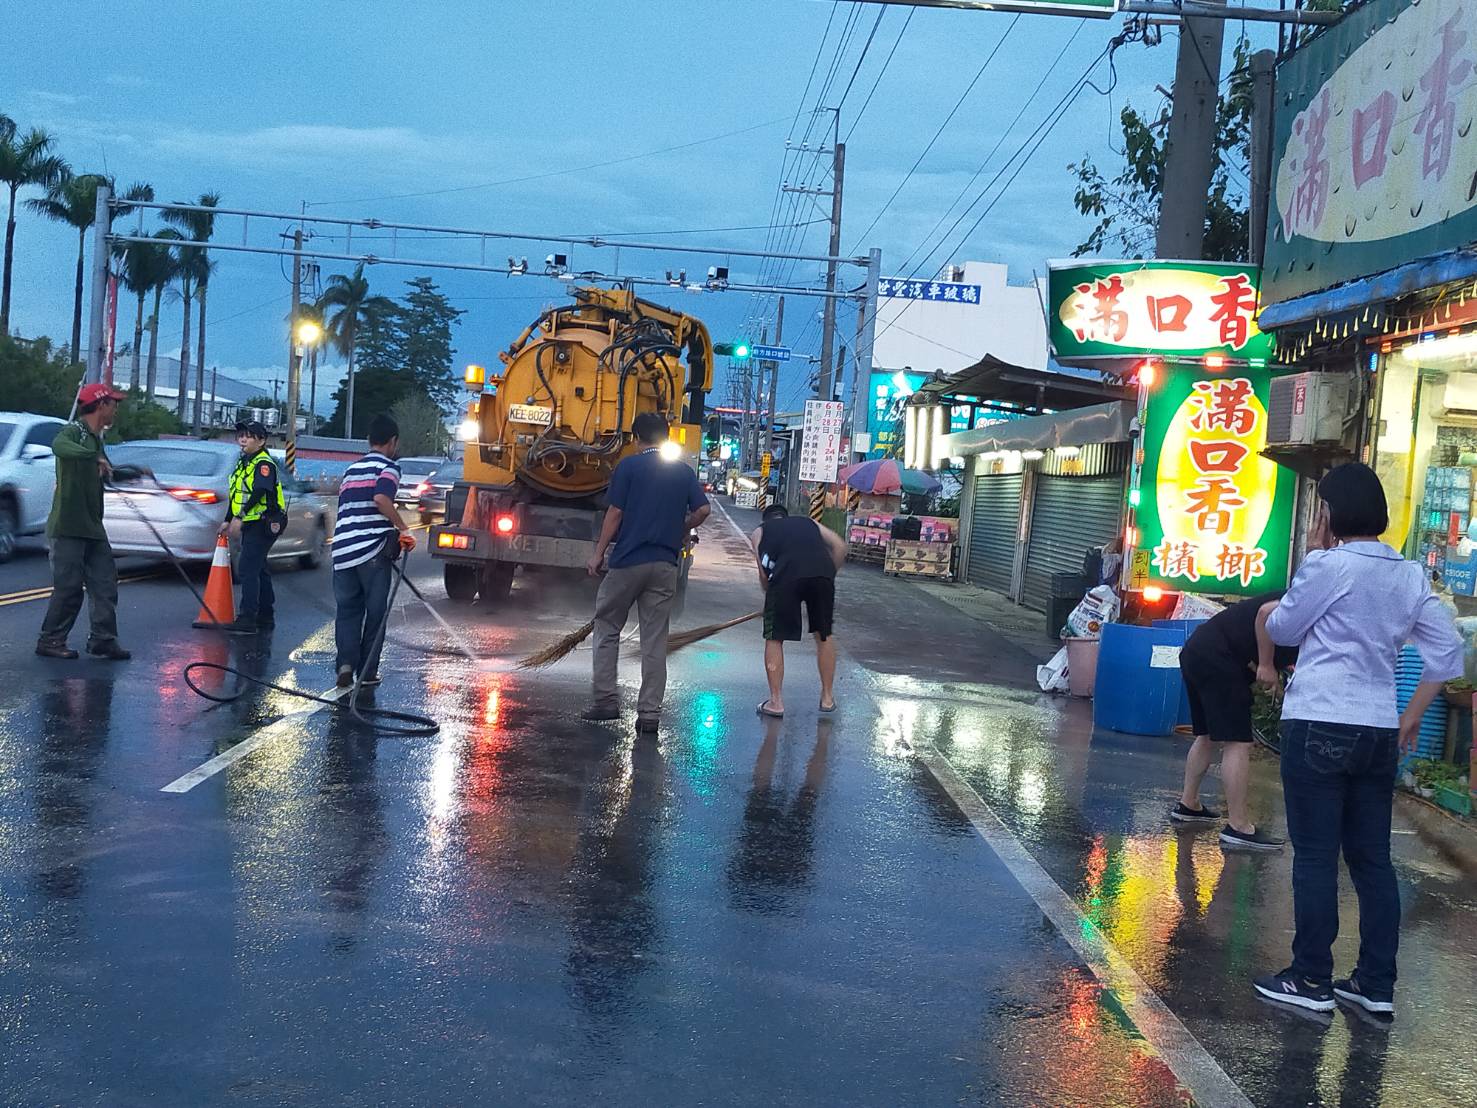 6月份鎮政活動剪影1090606員鹿路碎磚擋道，造成交通受阻，黃鎮長瑞珠派有關單位清理及協助